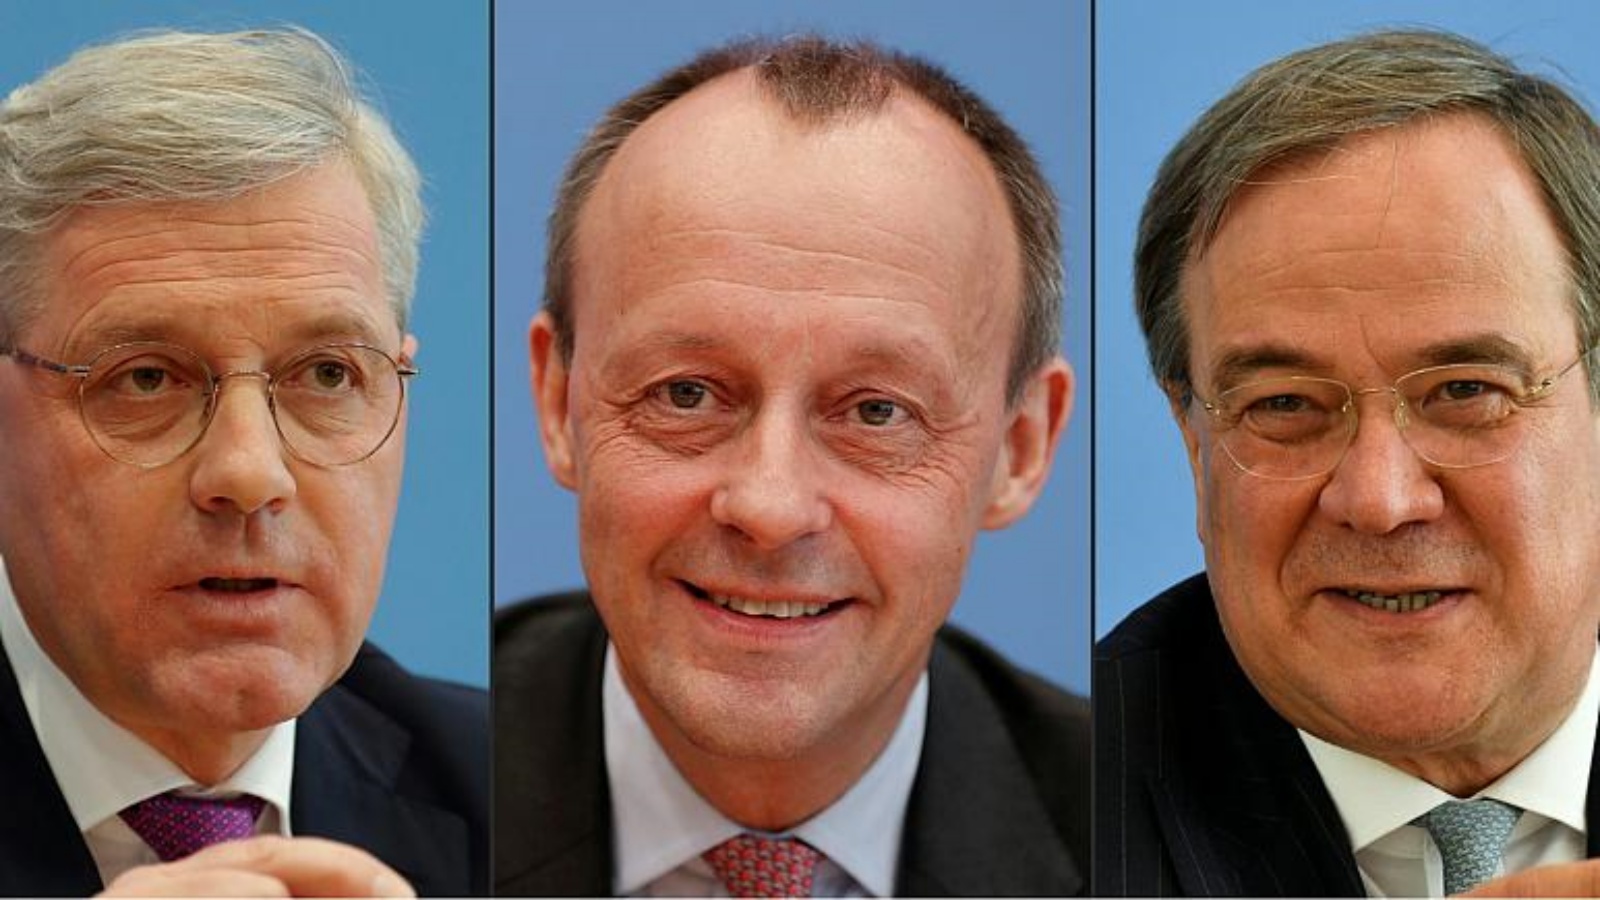 المرشحون لقيادة حزب الاتحاد الديمقراطي المسيحي (من اليسار إلى اليمين) نوربرت رويتجن وفريدريك ميرز وأرمين لاشيت.